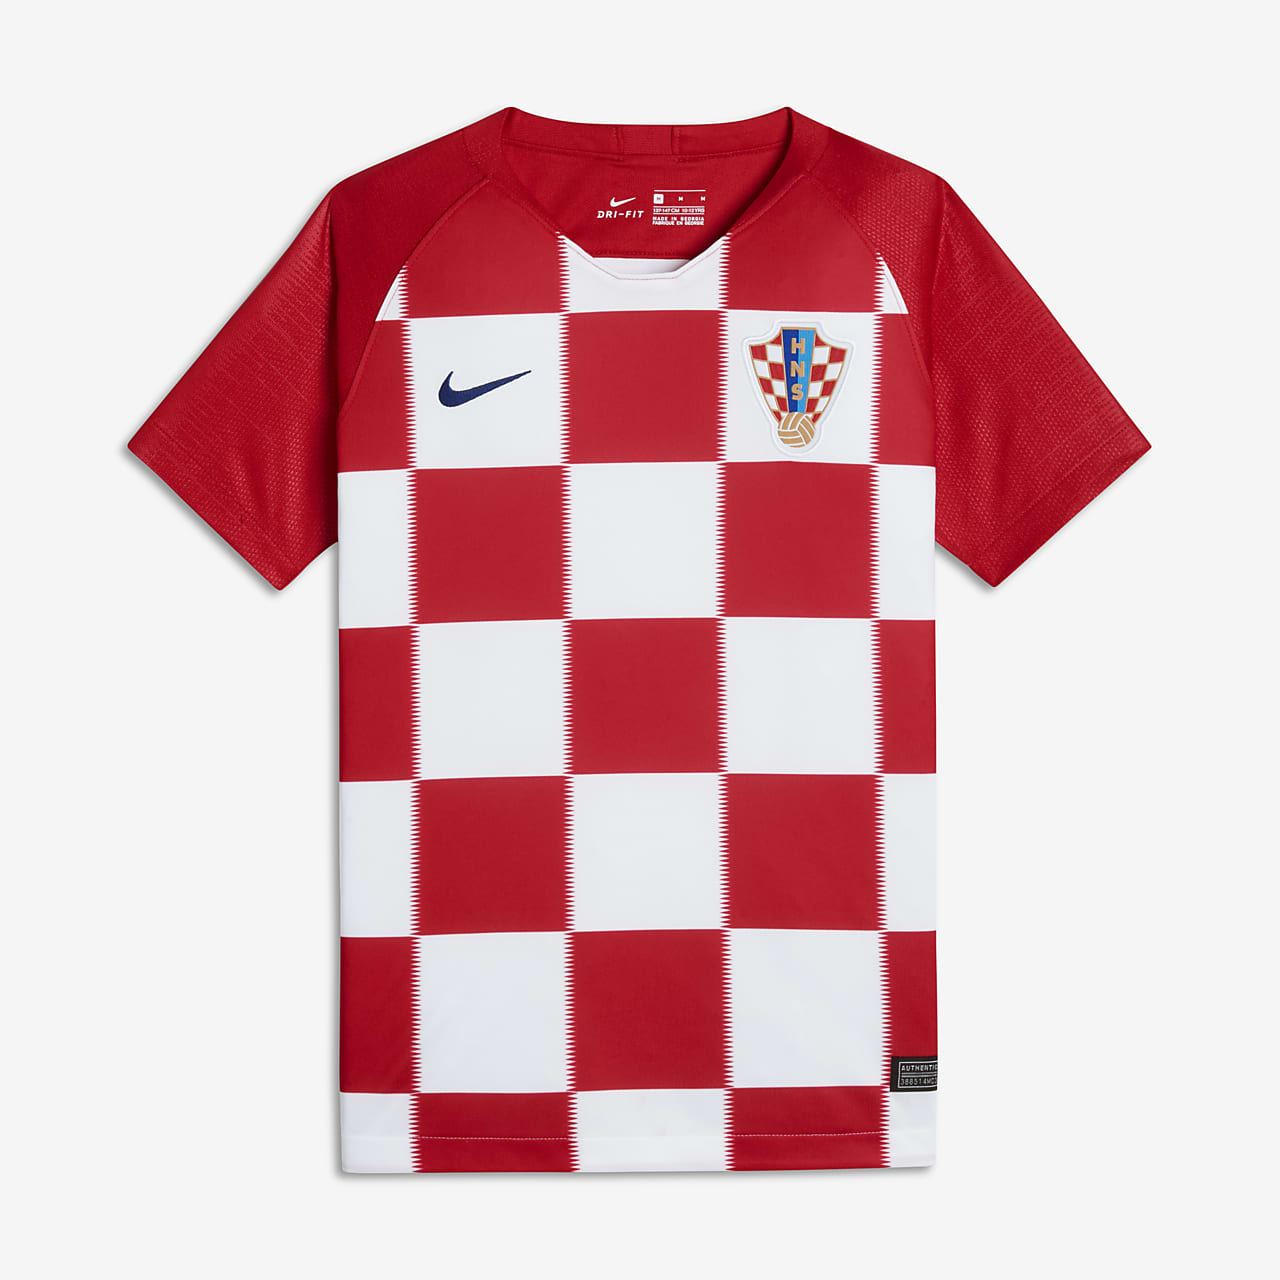 croatia football shirt